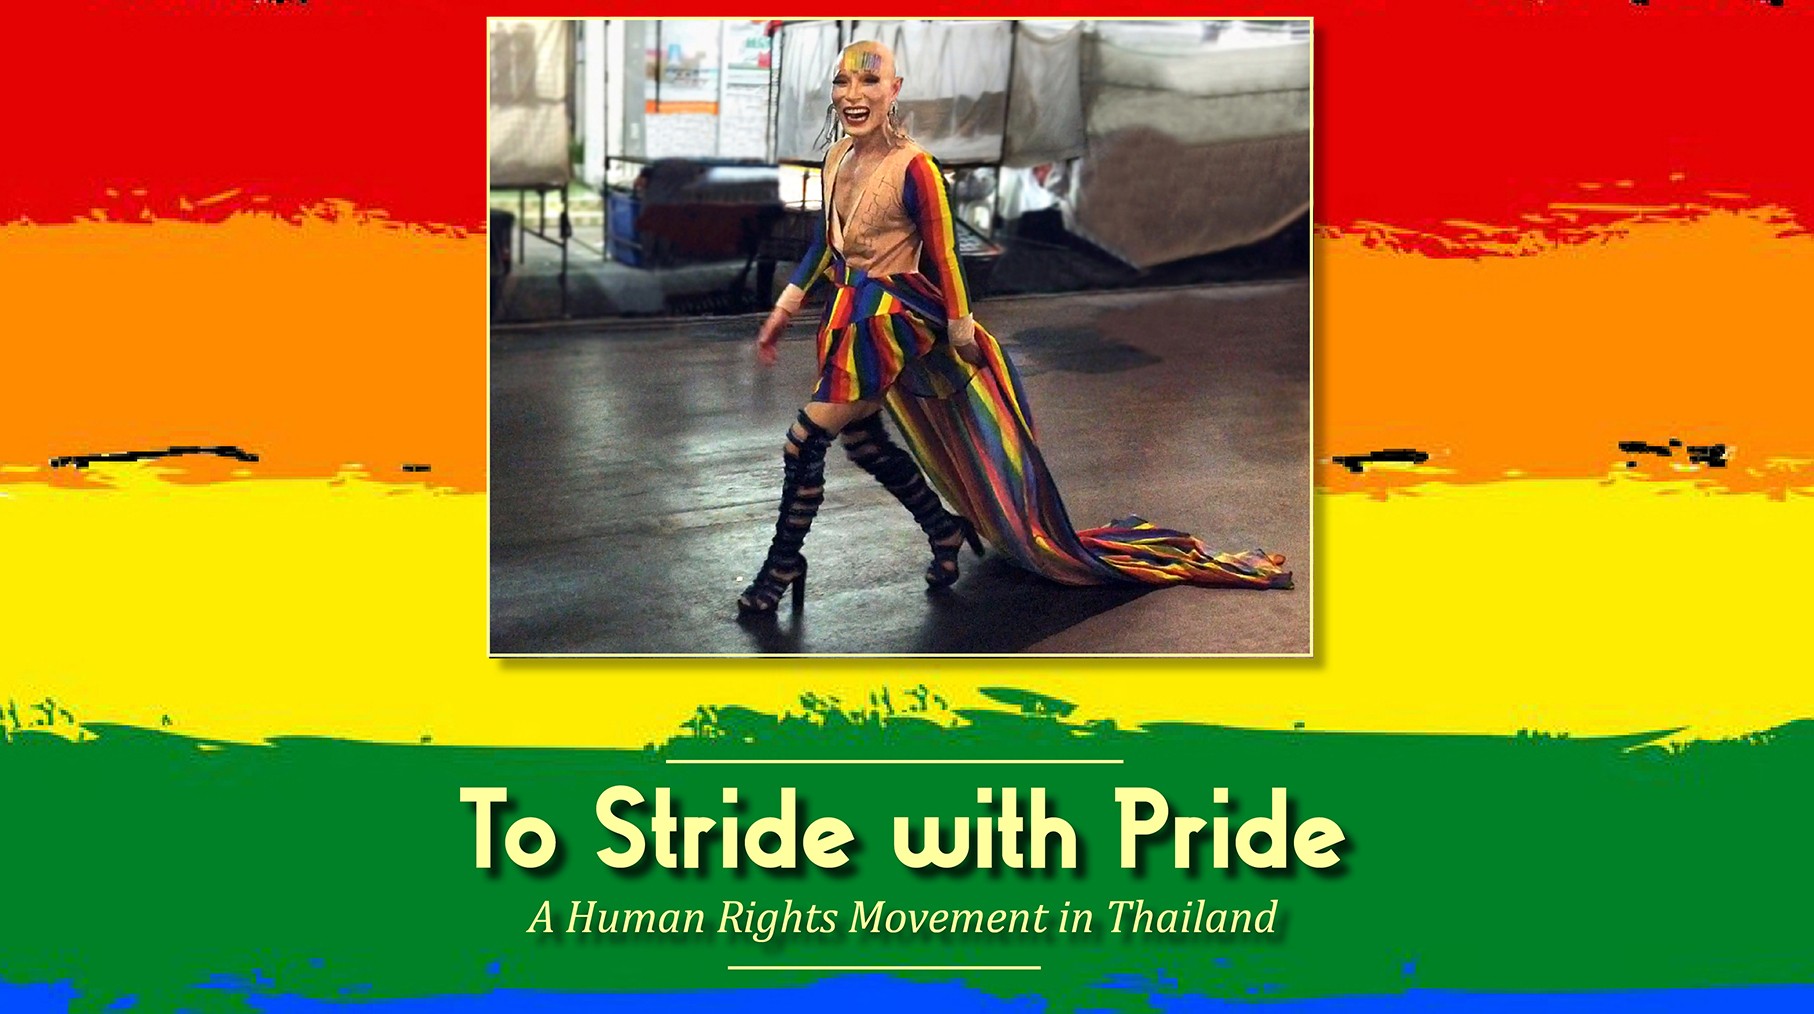 Chiang Mai Pride Parade: A Human Rights Movement in Thailand (2020 Chiang Mai Pride parade)